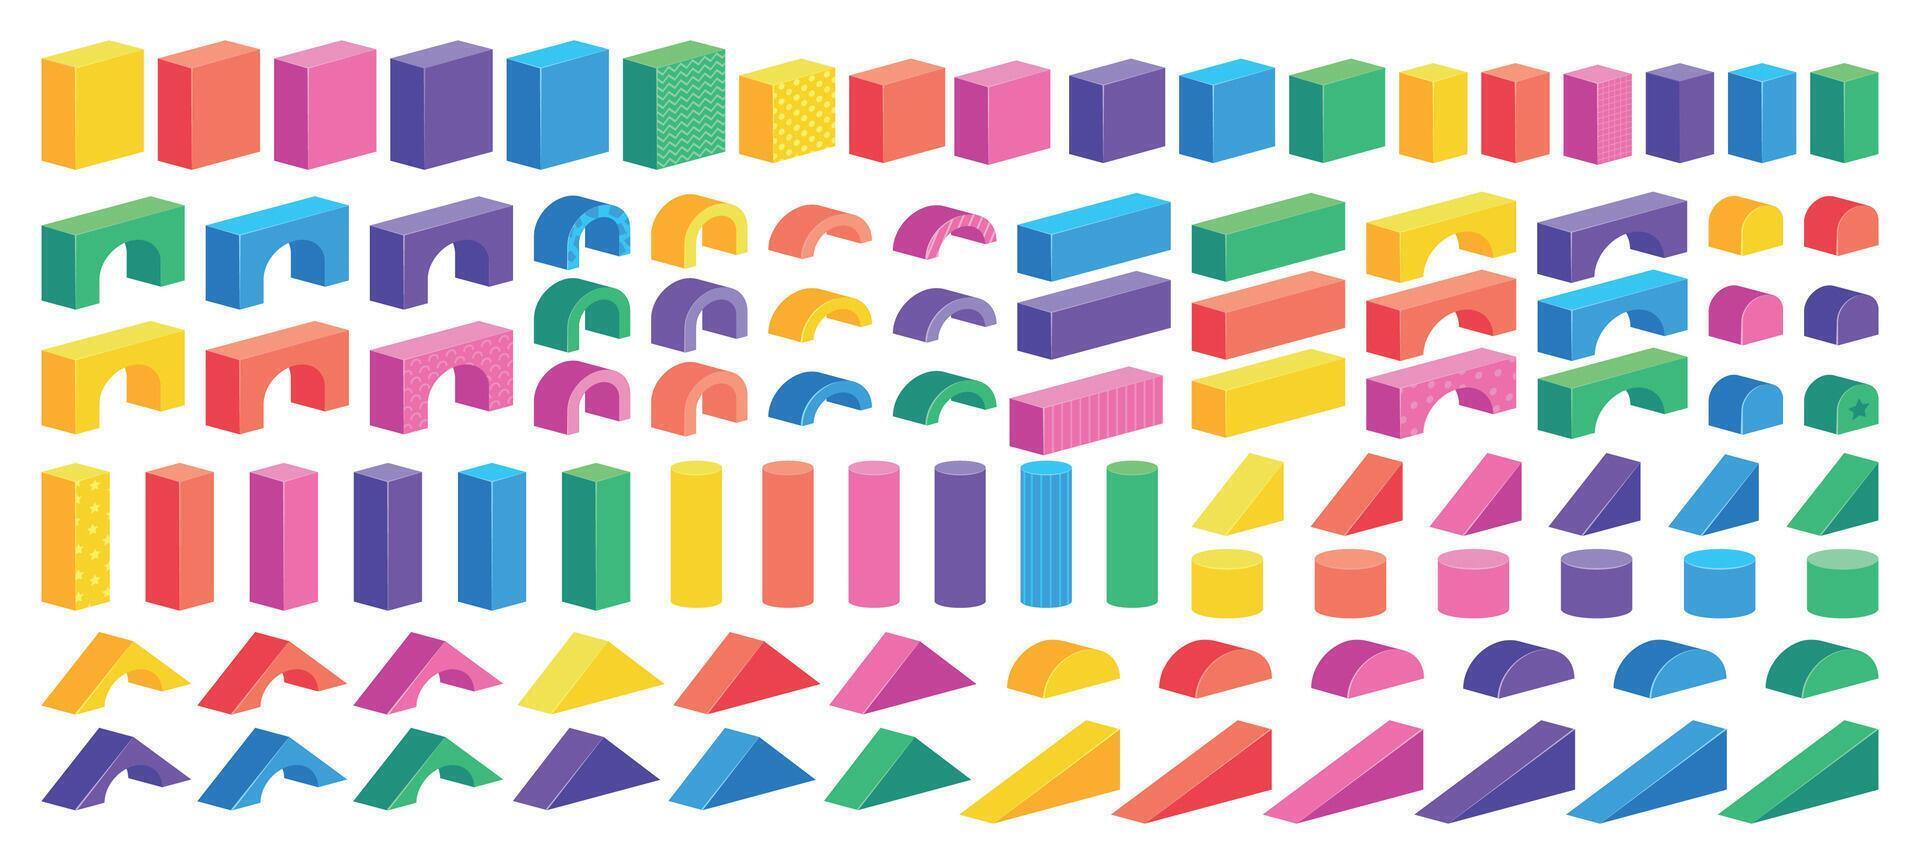 isometrisk blockera konstruktör. tecknad serie färgrik byggnad pussel för barn, plast kuber cylindrar och kottar. vektor barn konstruktion tegelstenar uppsättning